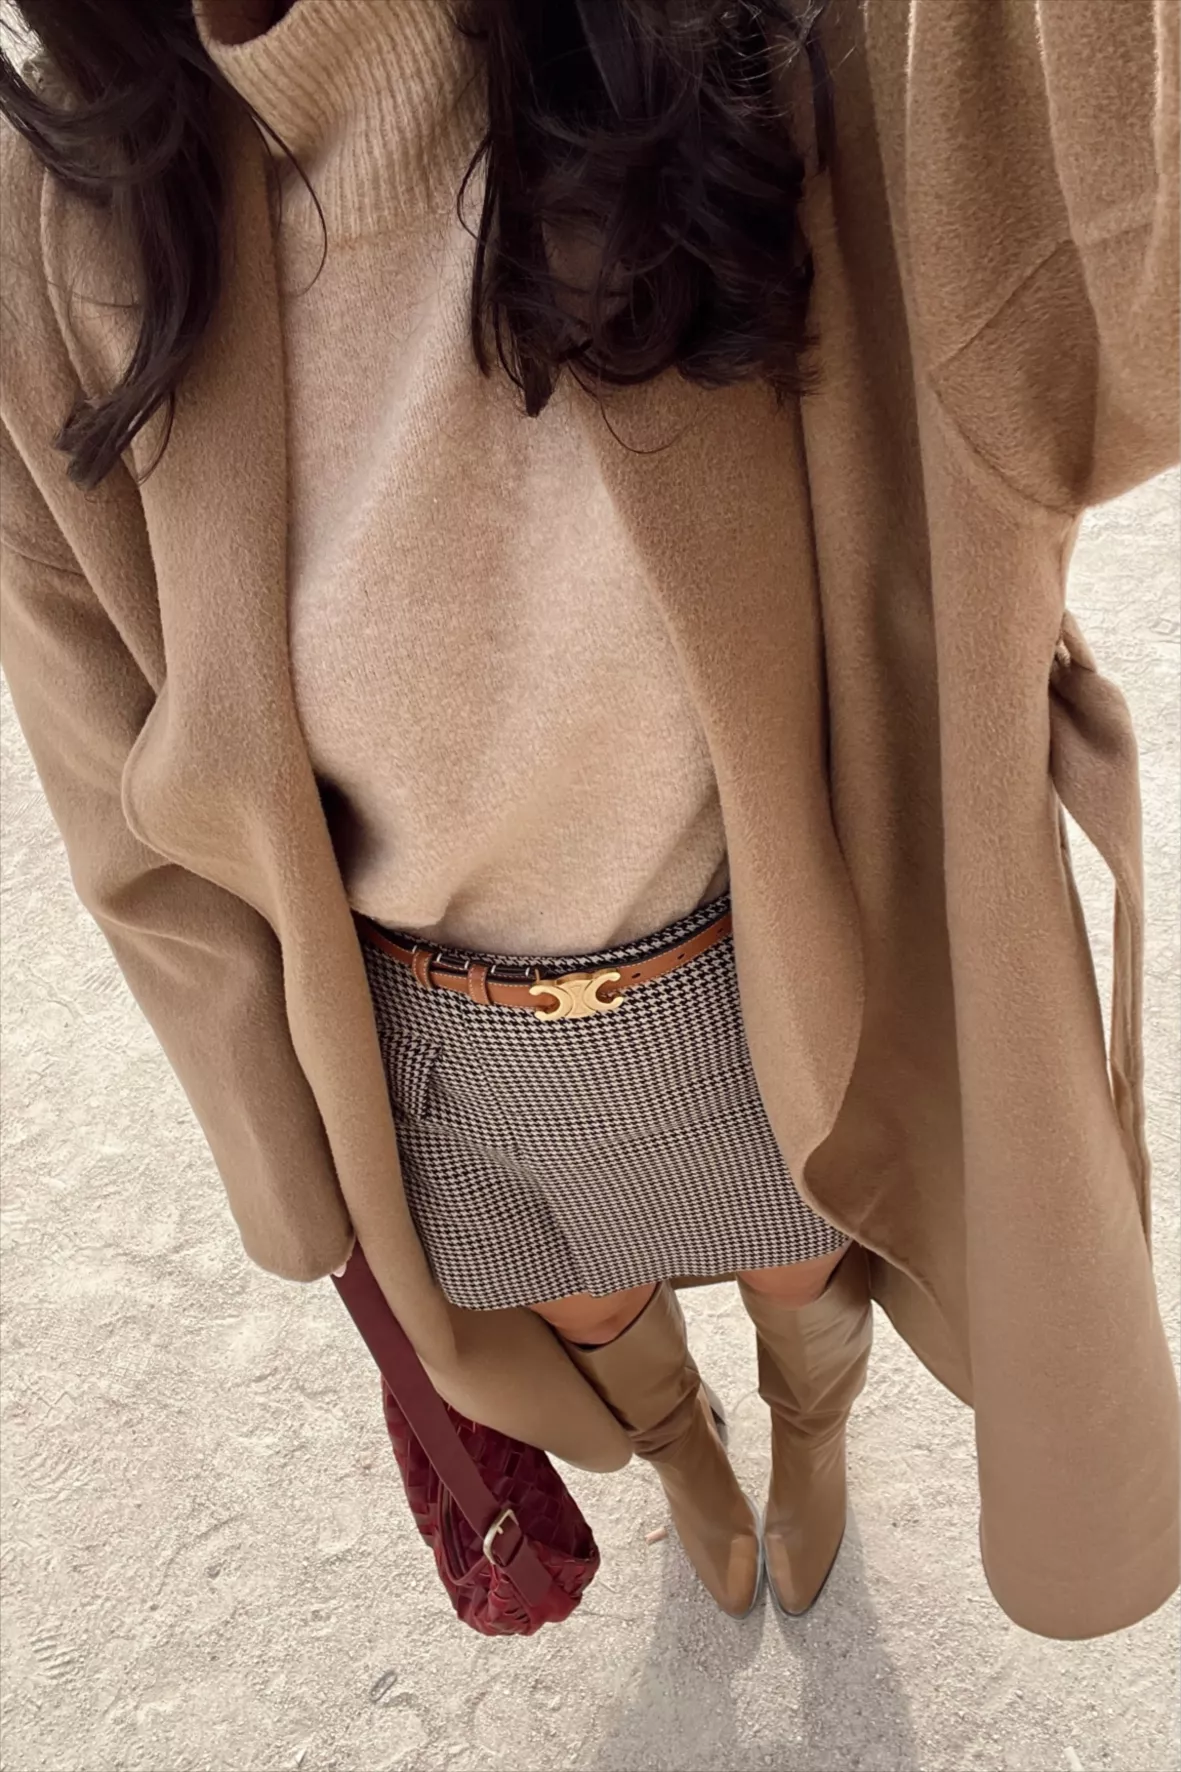 Loop cloth handbag Louis Vuitton Brown in Cloth - 27642244